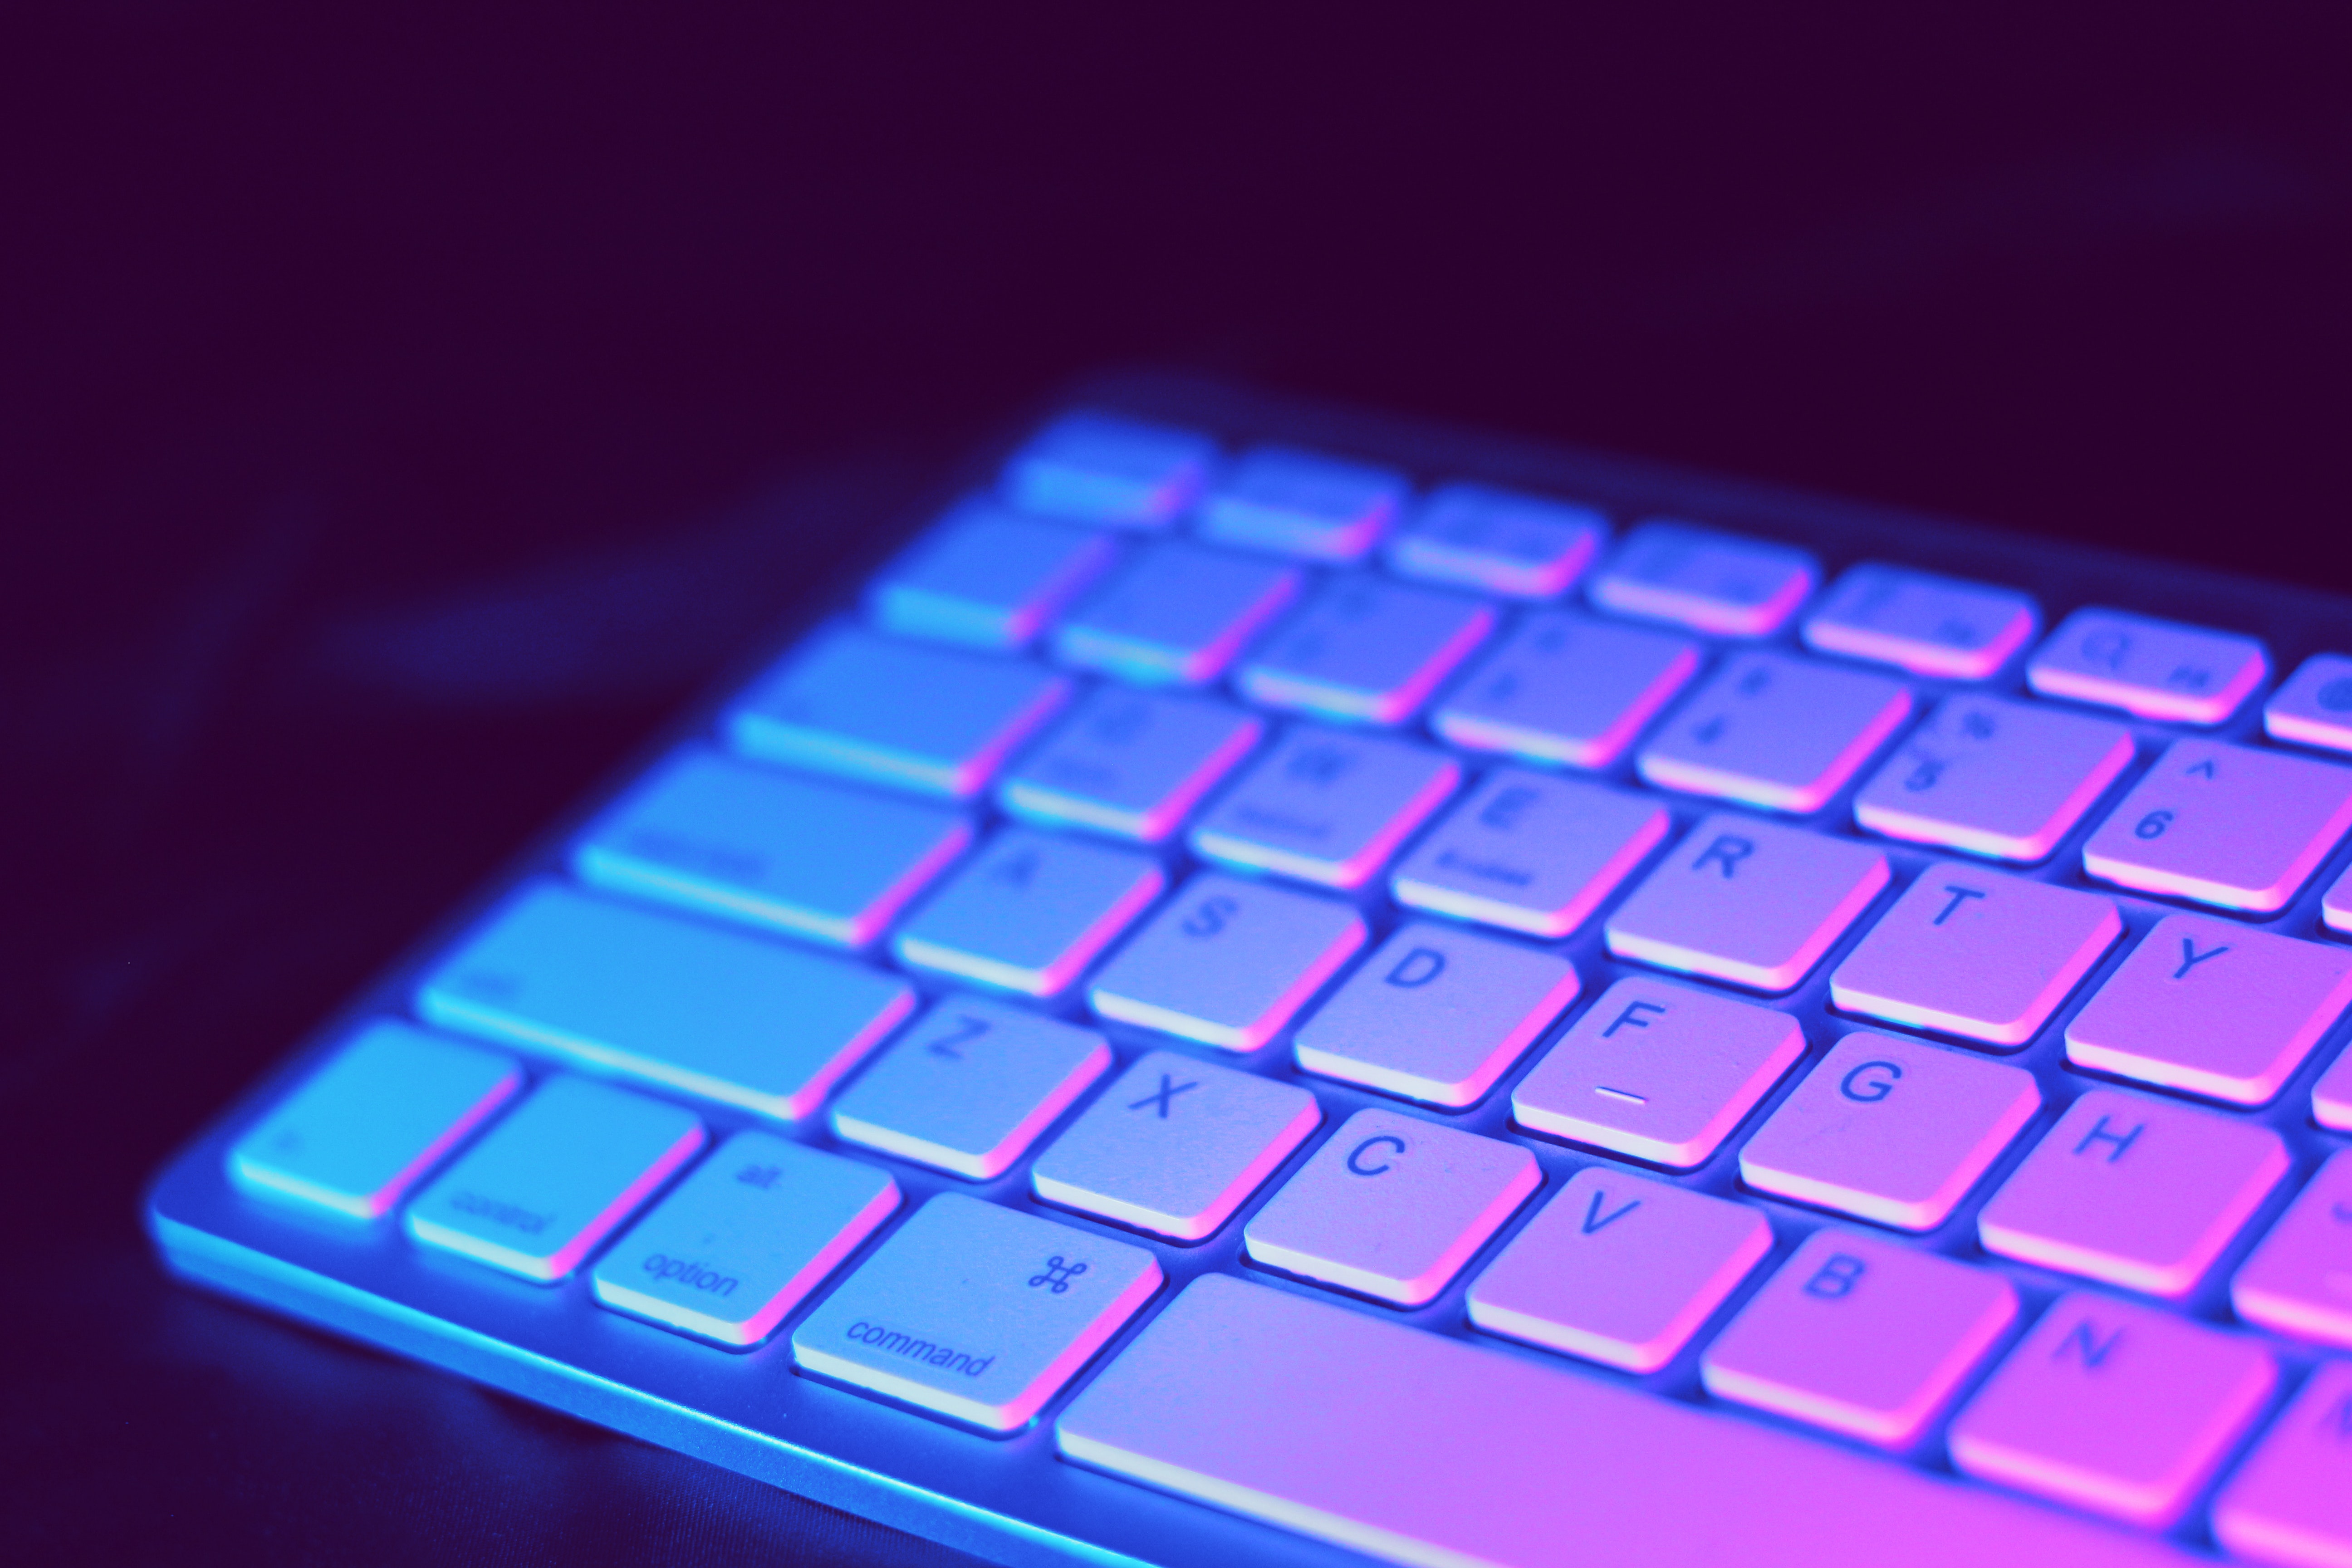 sfondo della tastiera,tastiera del computer,viola,blu,viola,rosso